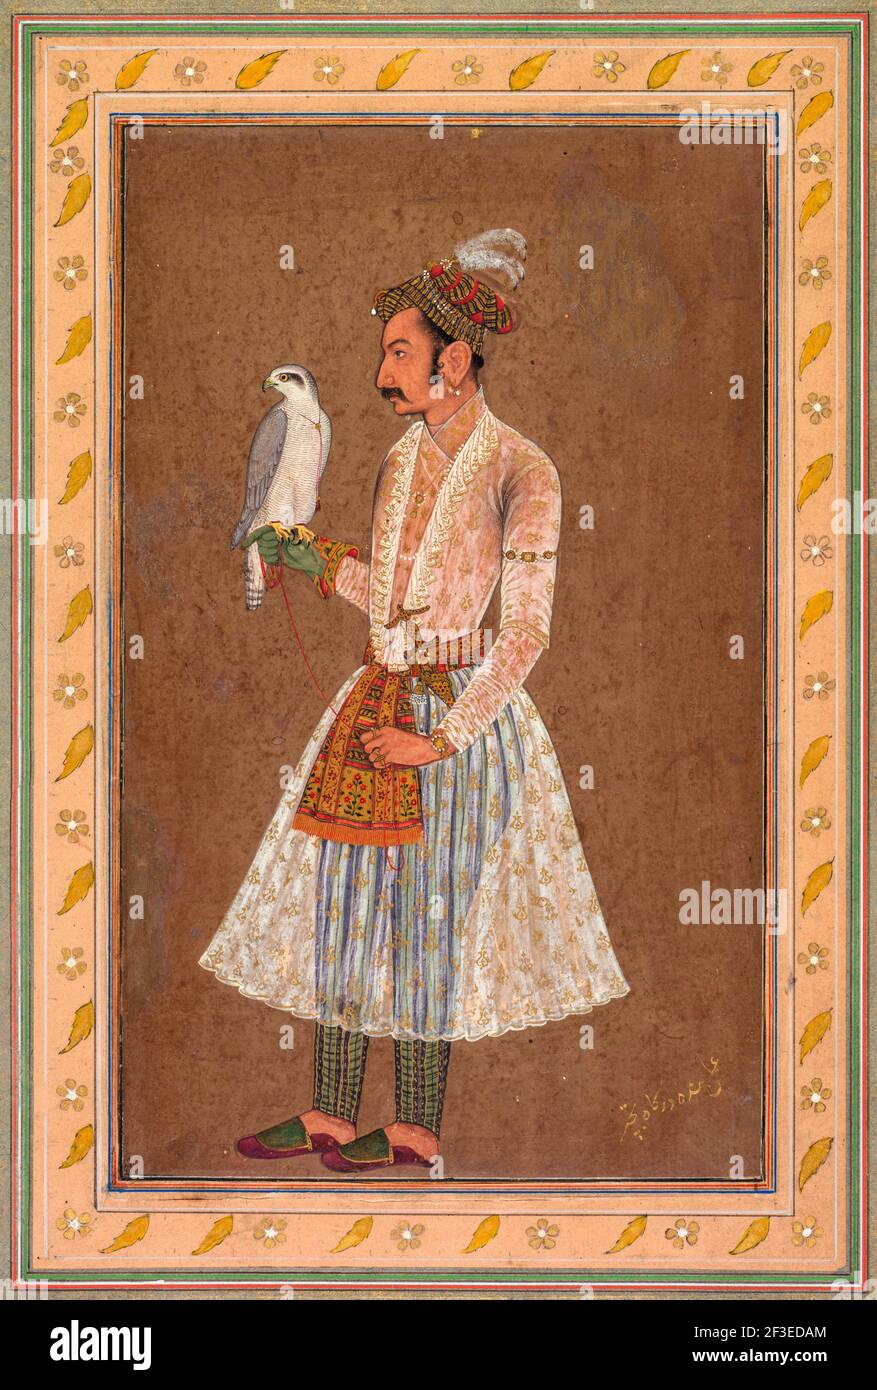 Porträt von Raja Jagat Singh von Nurpur (regierte 1618-46) von Bichitr, wahrscheinlich 1619 Stockfoto